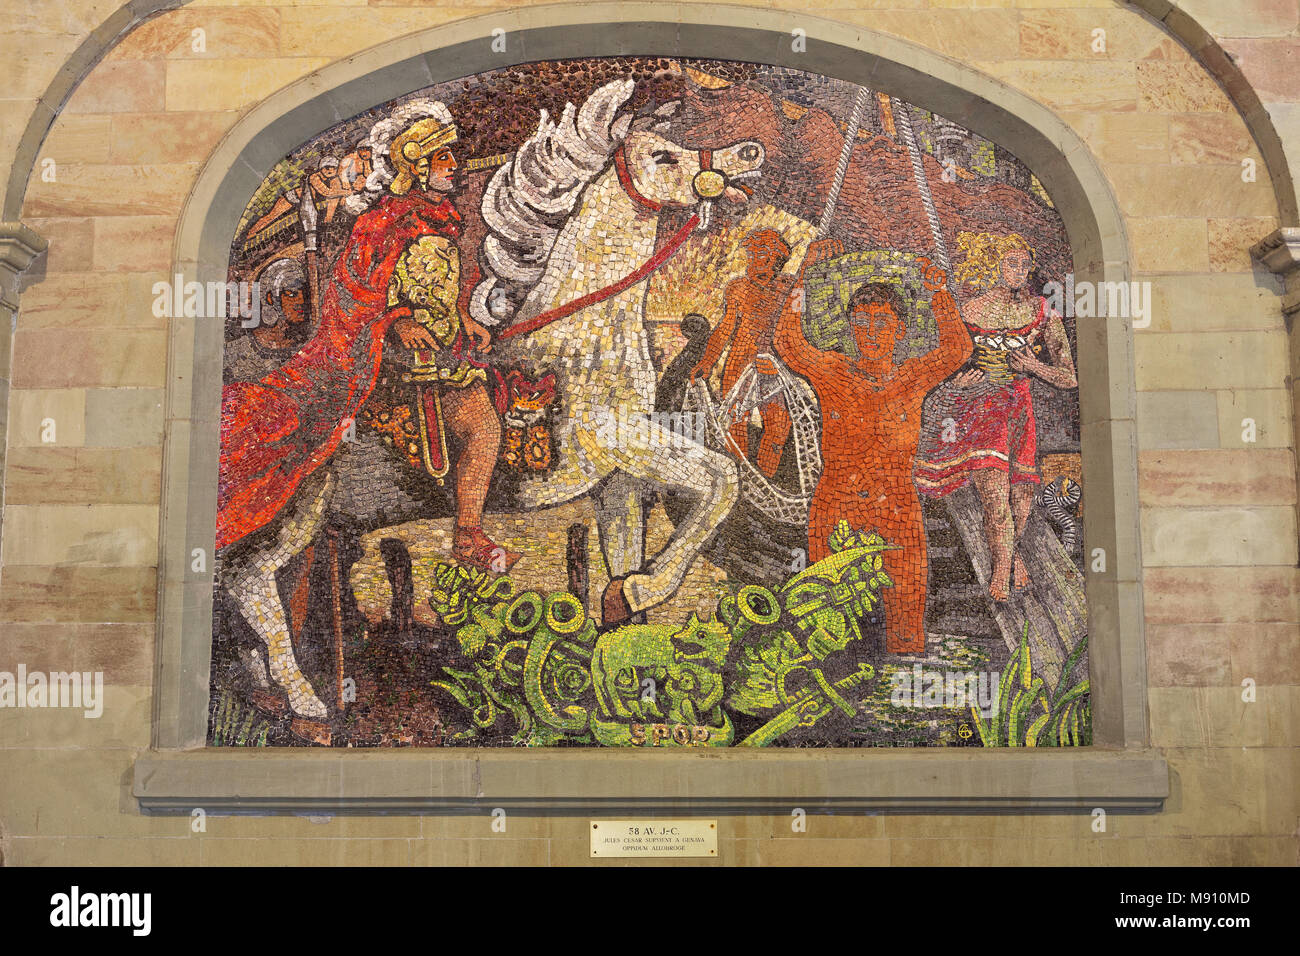 Julius Caesar kommt in Genf - Die alten Arsenal - eine Reihe von Mosaik Szenen, die jeweils mit einem anderen Moment in der Geschichte von Genf Stockfoto